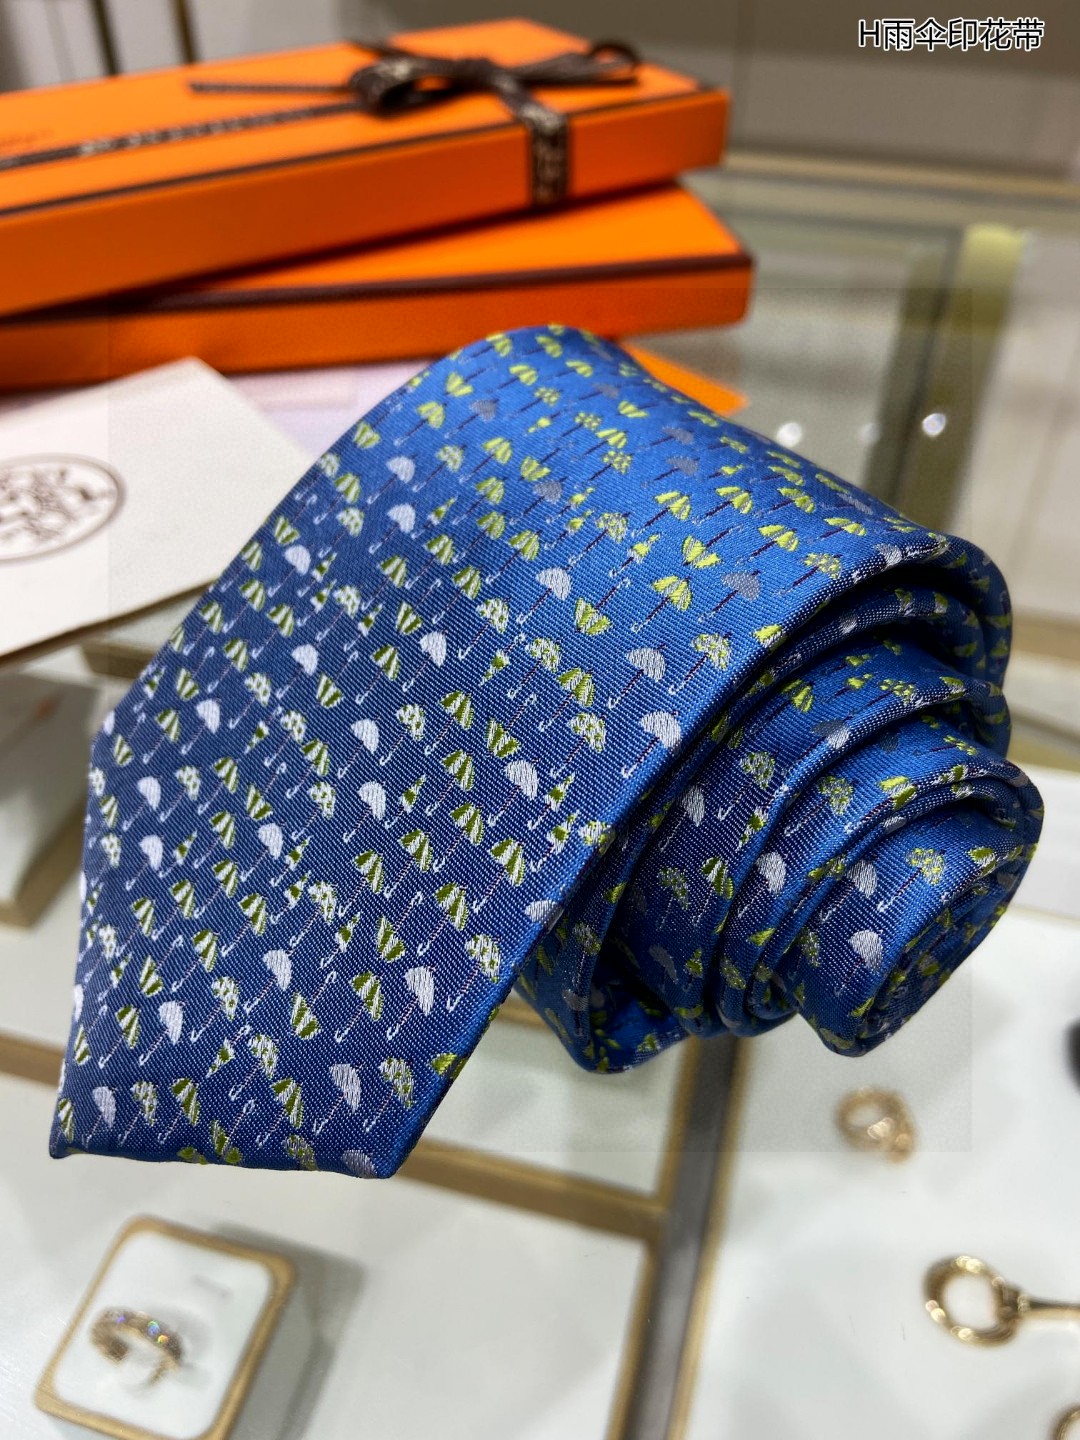 特价男士新款领带系列H雨伞印花领带稀有H家每年都有一千条不同印花的领带面世从最初的多以几何图案表现骑术活